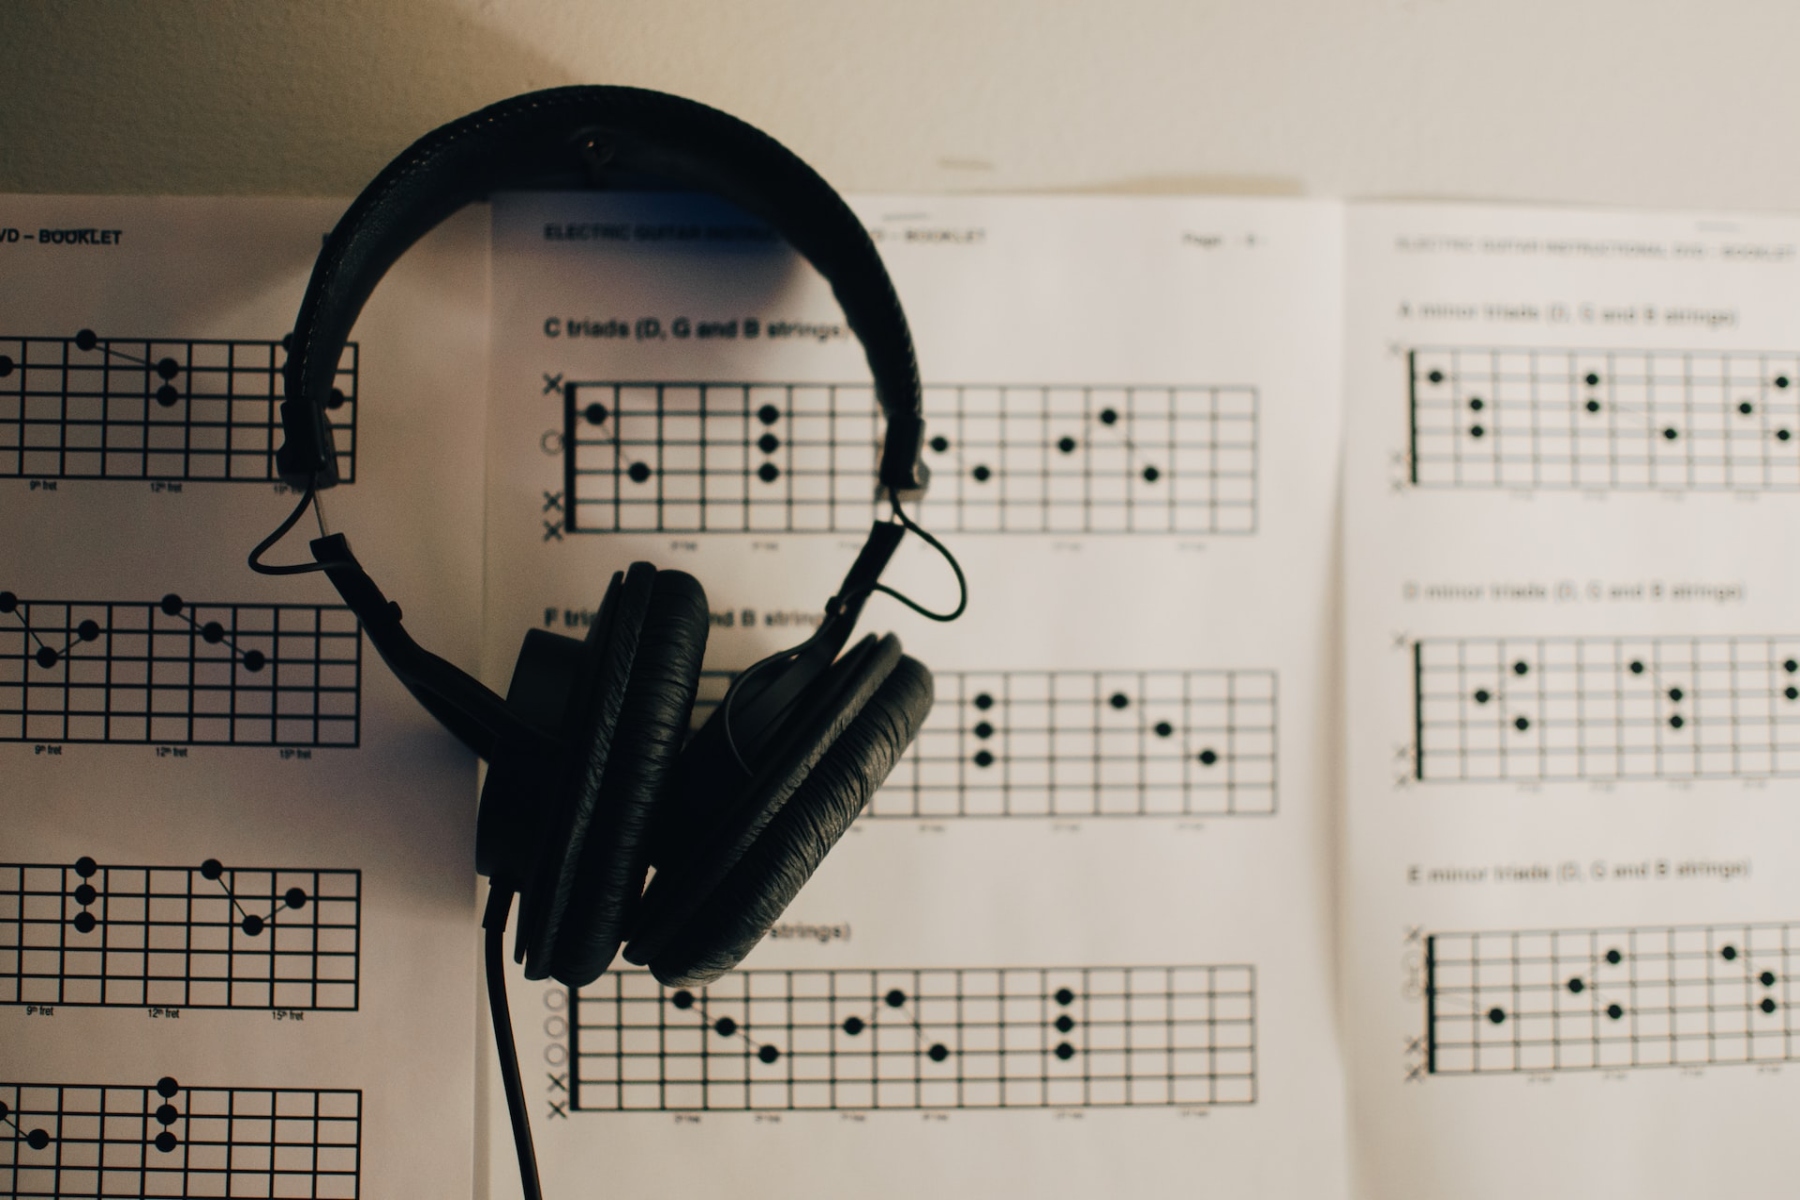 Νόσος Αλτσχάιμερ: Πώς η μουσική συμβάλλει στην αντιμετώπιση του Αλτσχάιμερ;